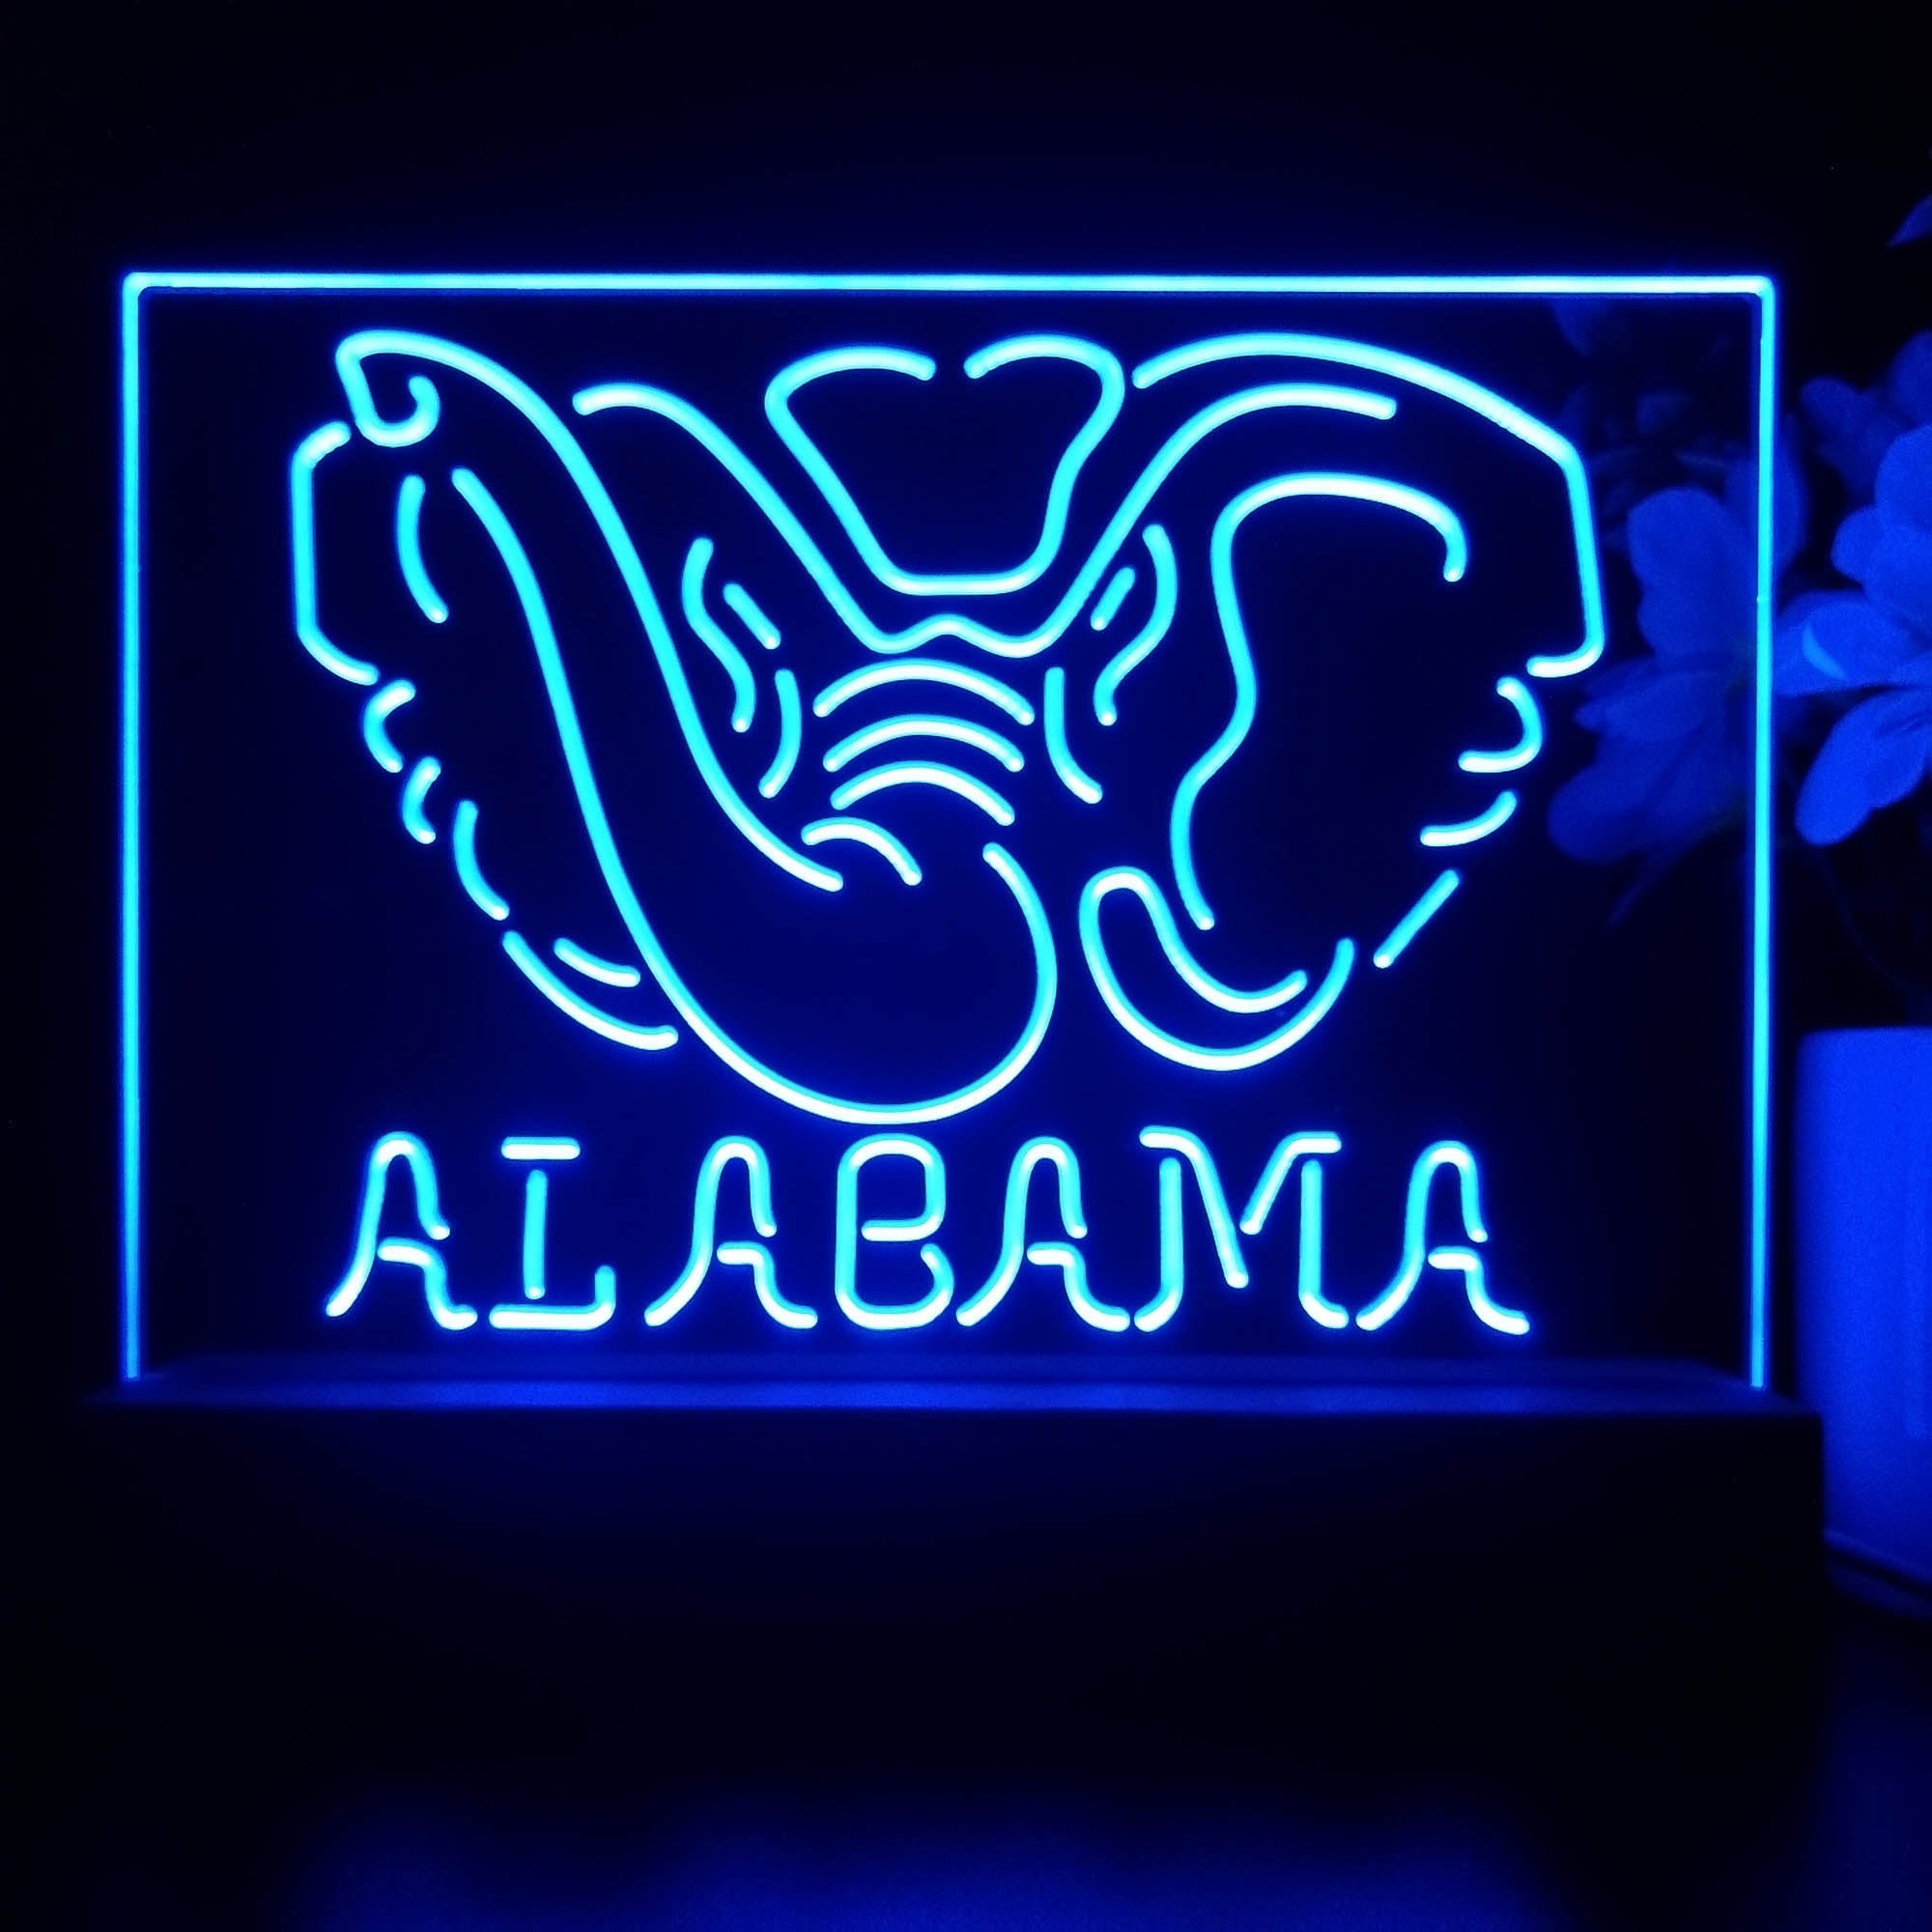 Alabama Crimson Tide 3D Illusion Night Light Desk Lamp